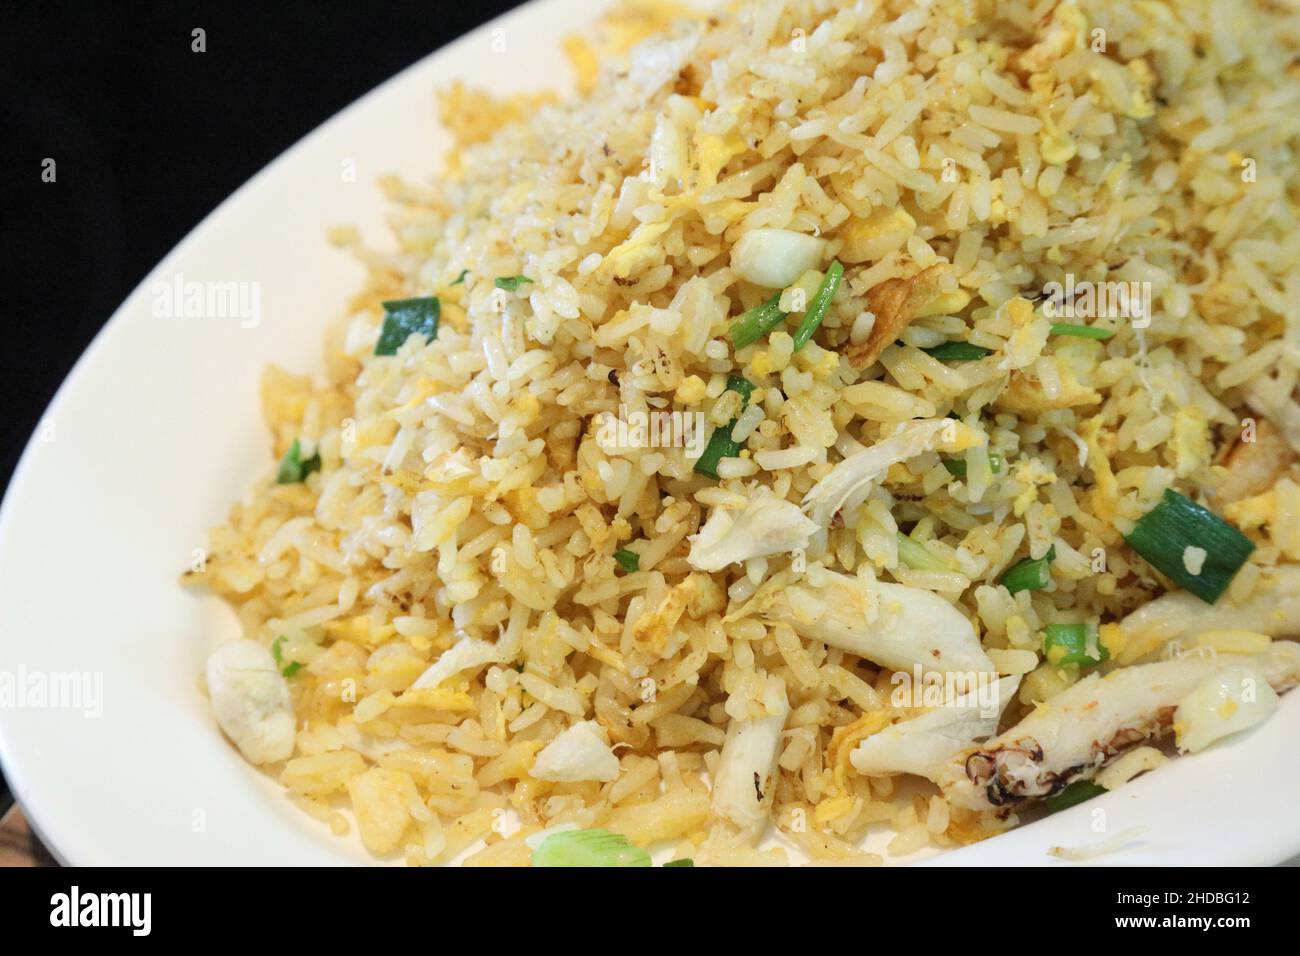 Das asiatische Essen namens Krabben gebraten serviert in der großen Gericht für vier bis fünf Personen. Stockfoto